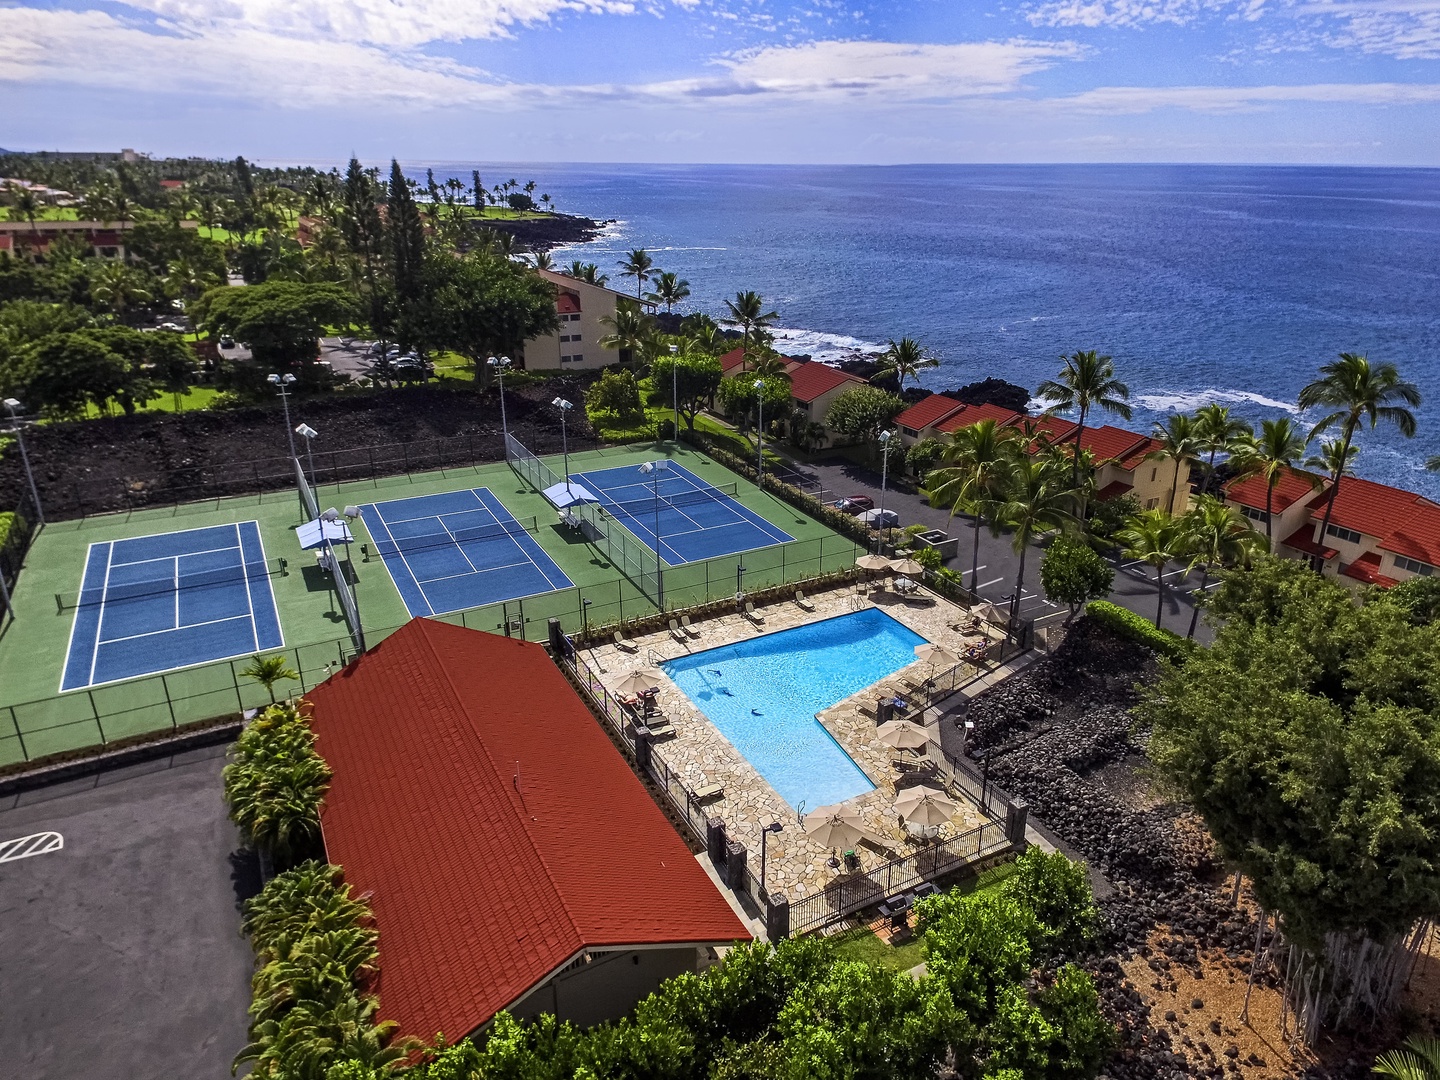 Kailua Kona Vacation Rentals, Keauhou Kona Surf & Racquet #48 - Keauhou Kona Surf & Racquet Pool Aerial